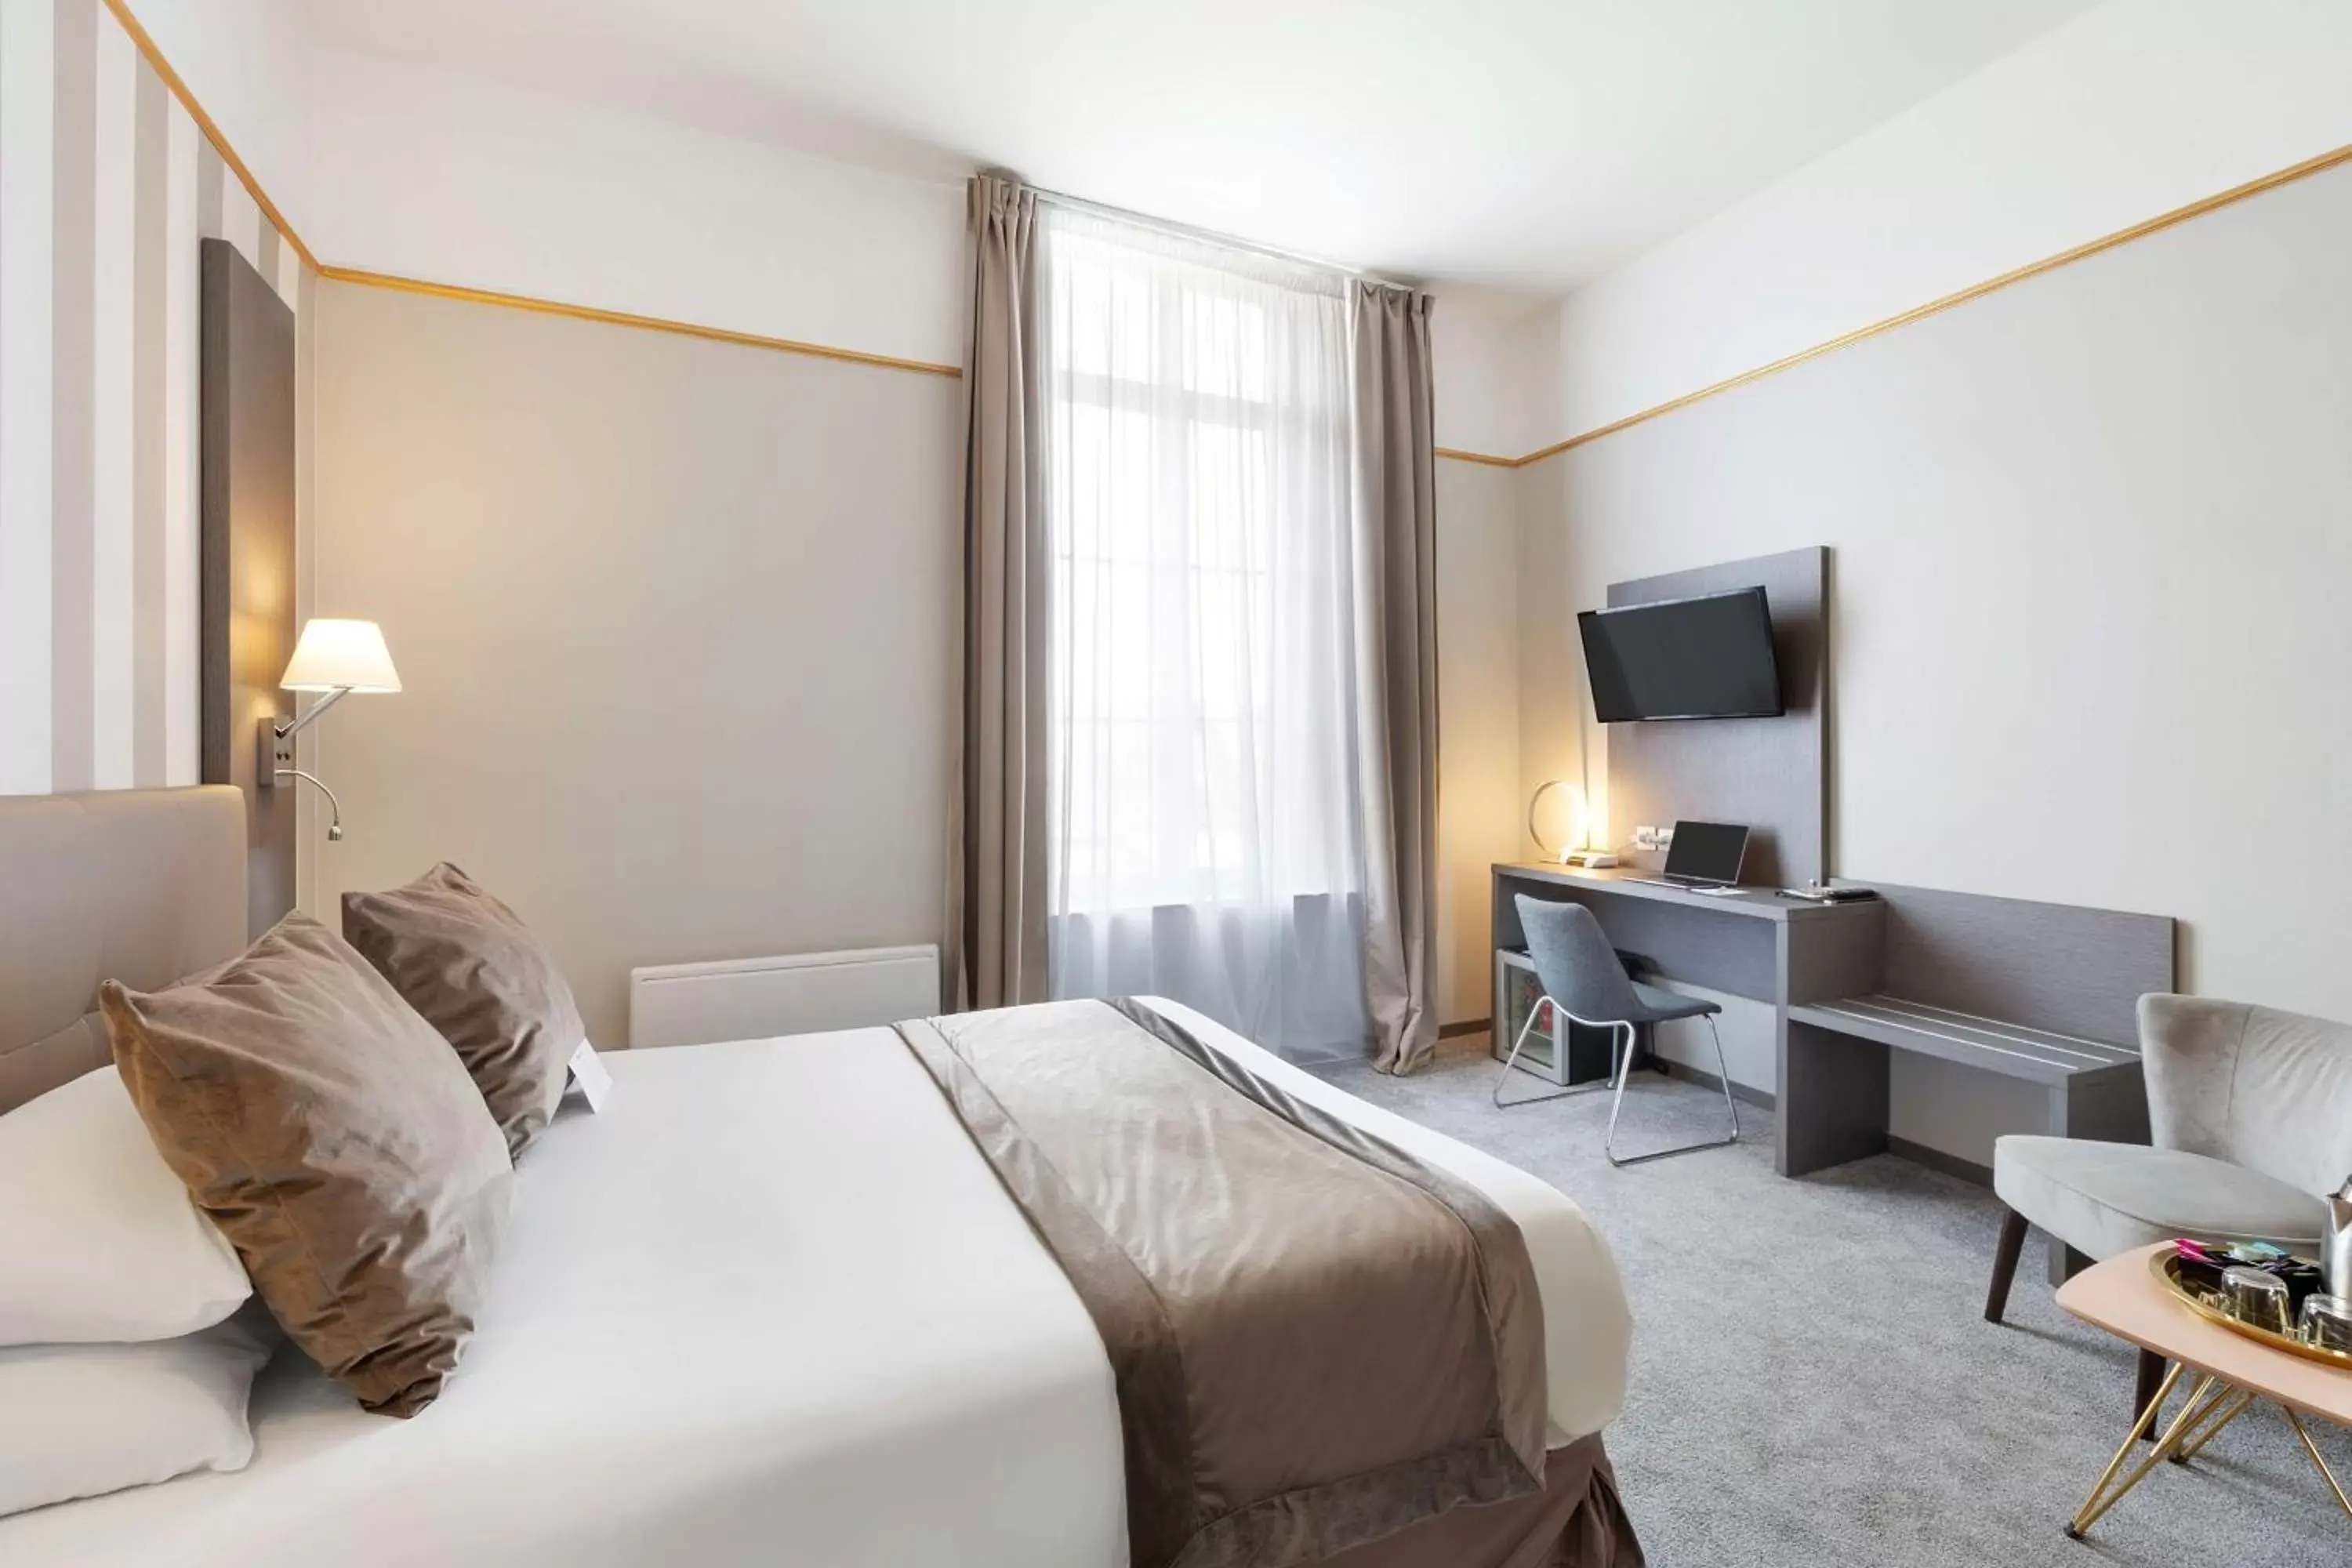 Bedroom, Bed in Best Western Hotel Saint Claude